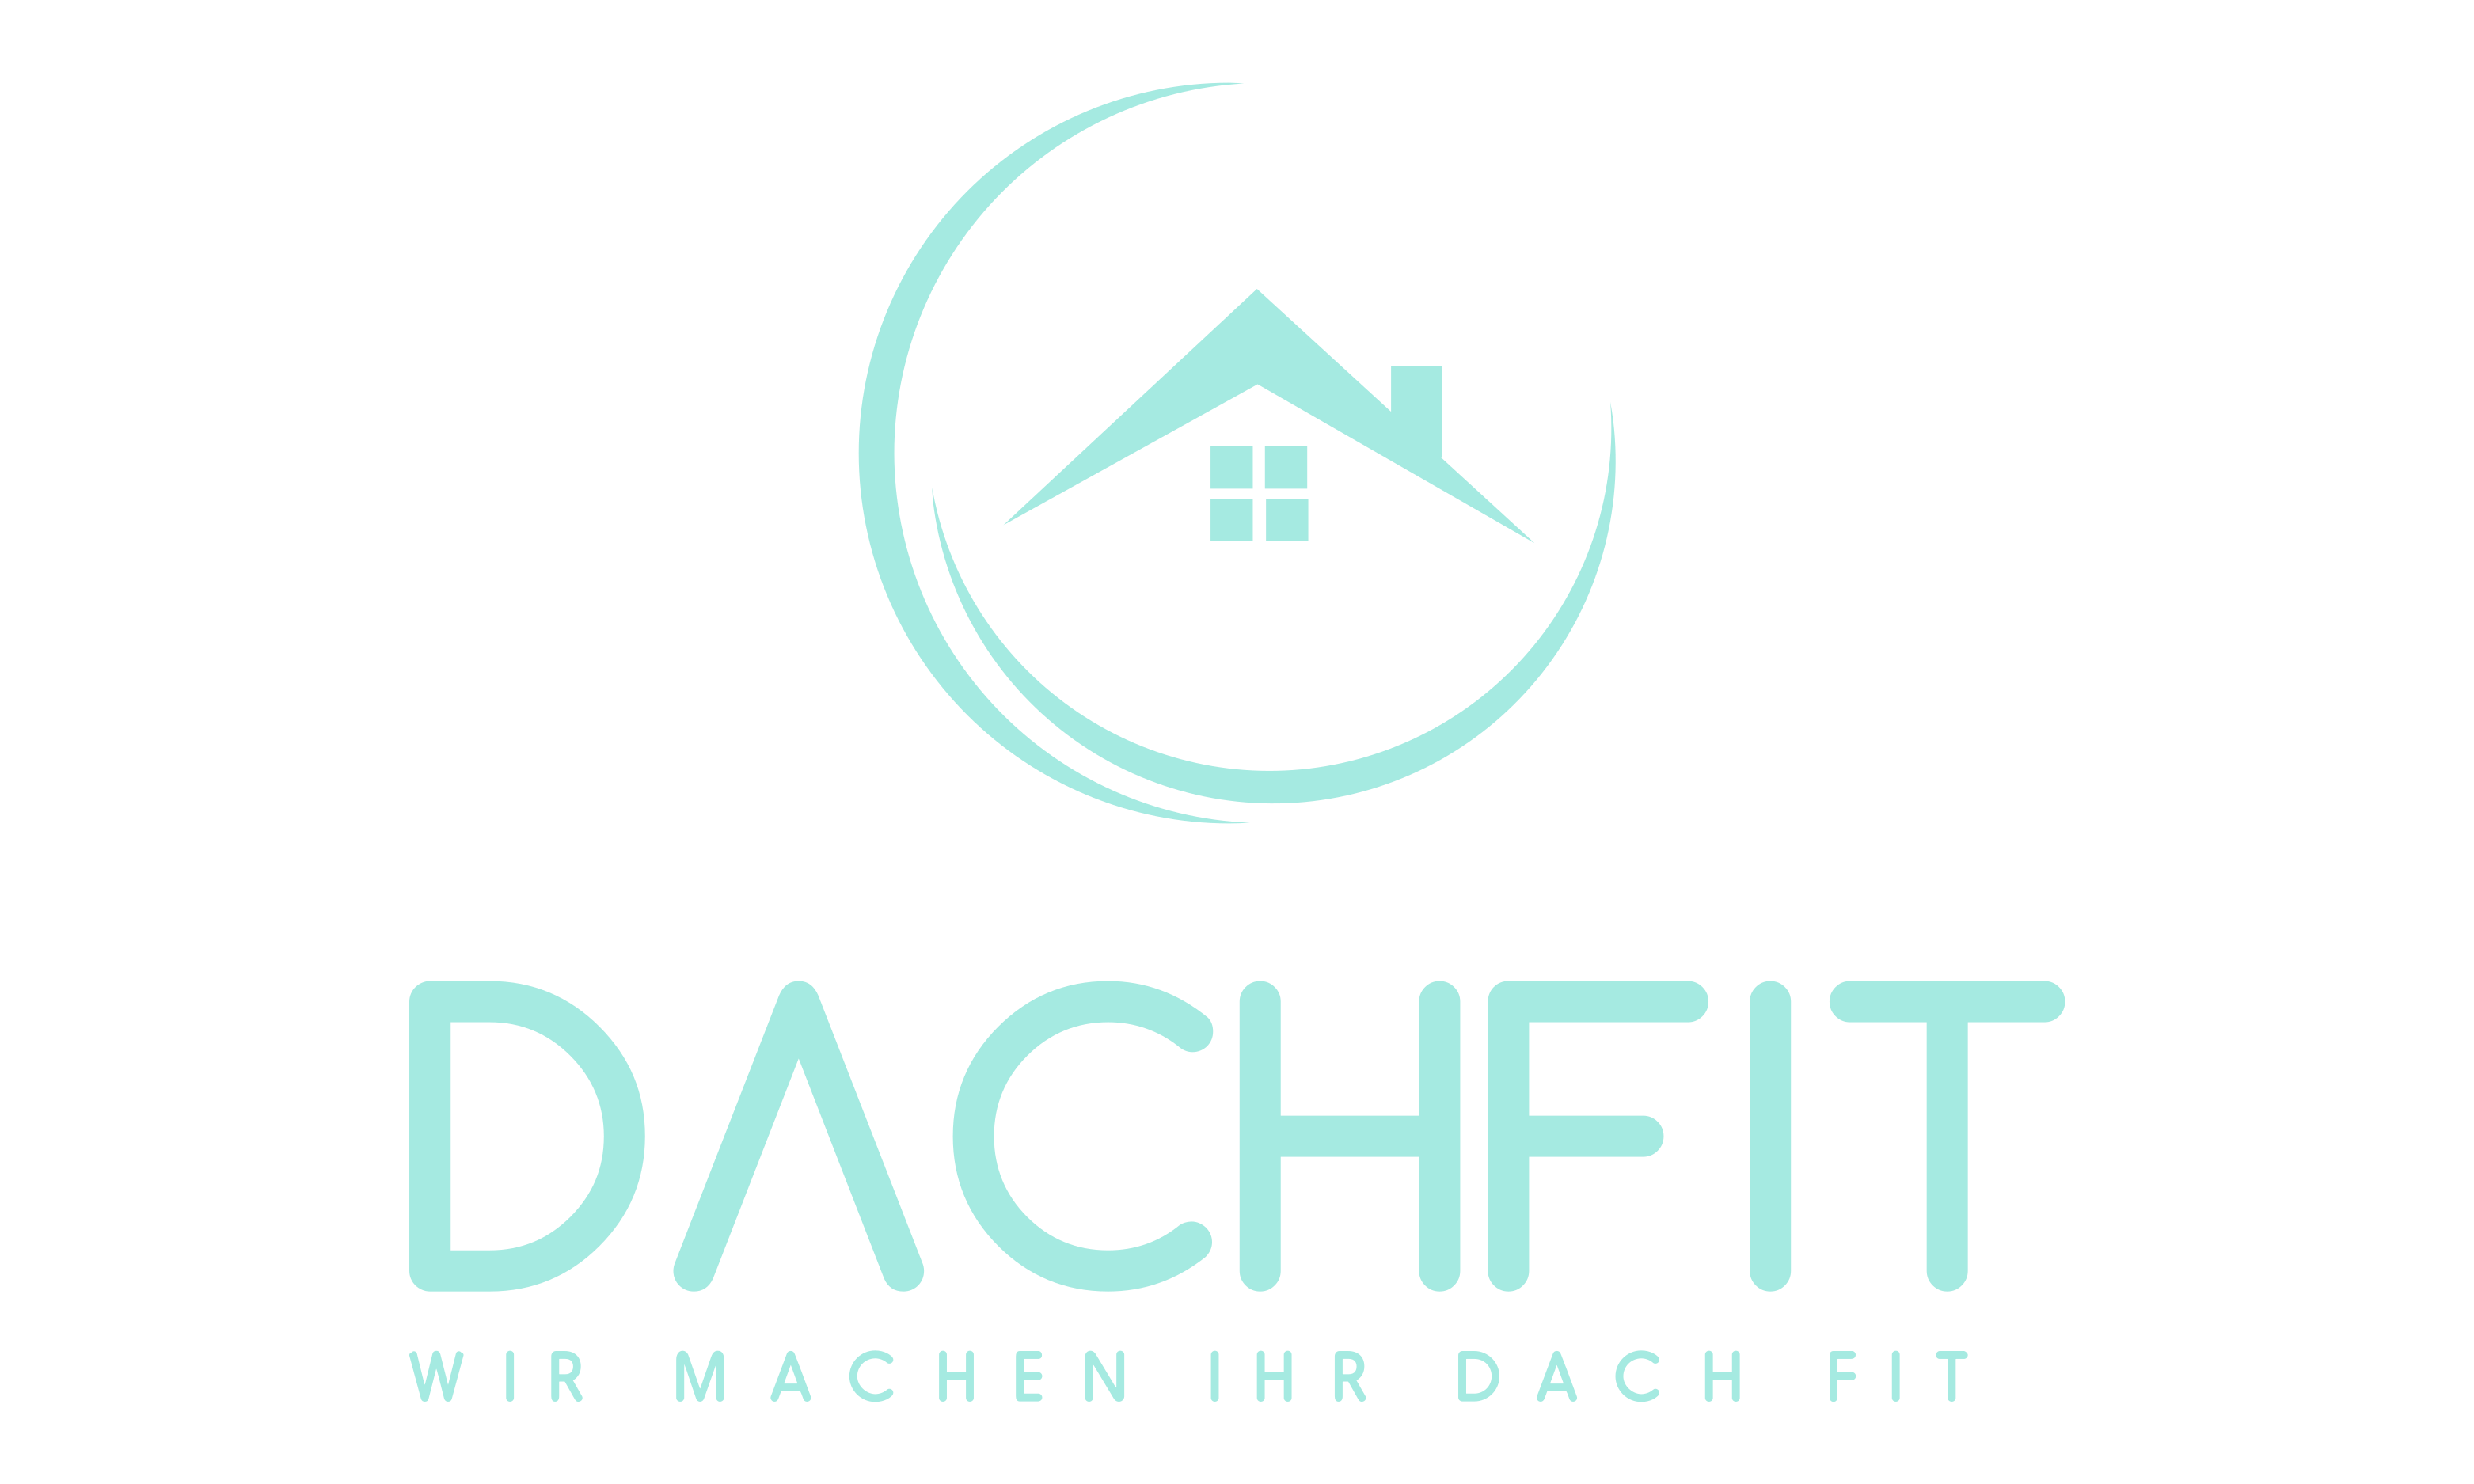 Dachfit GmbH